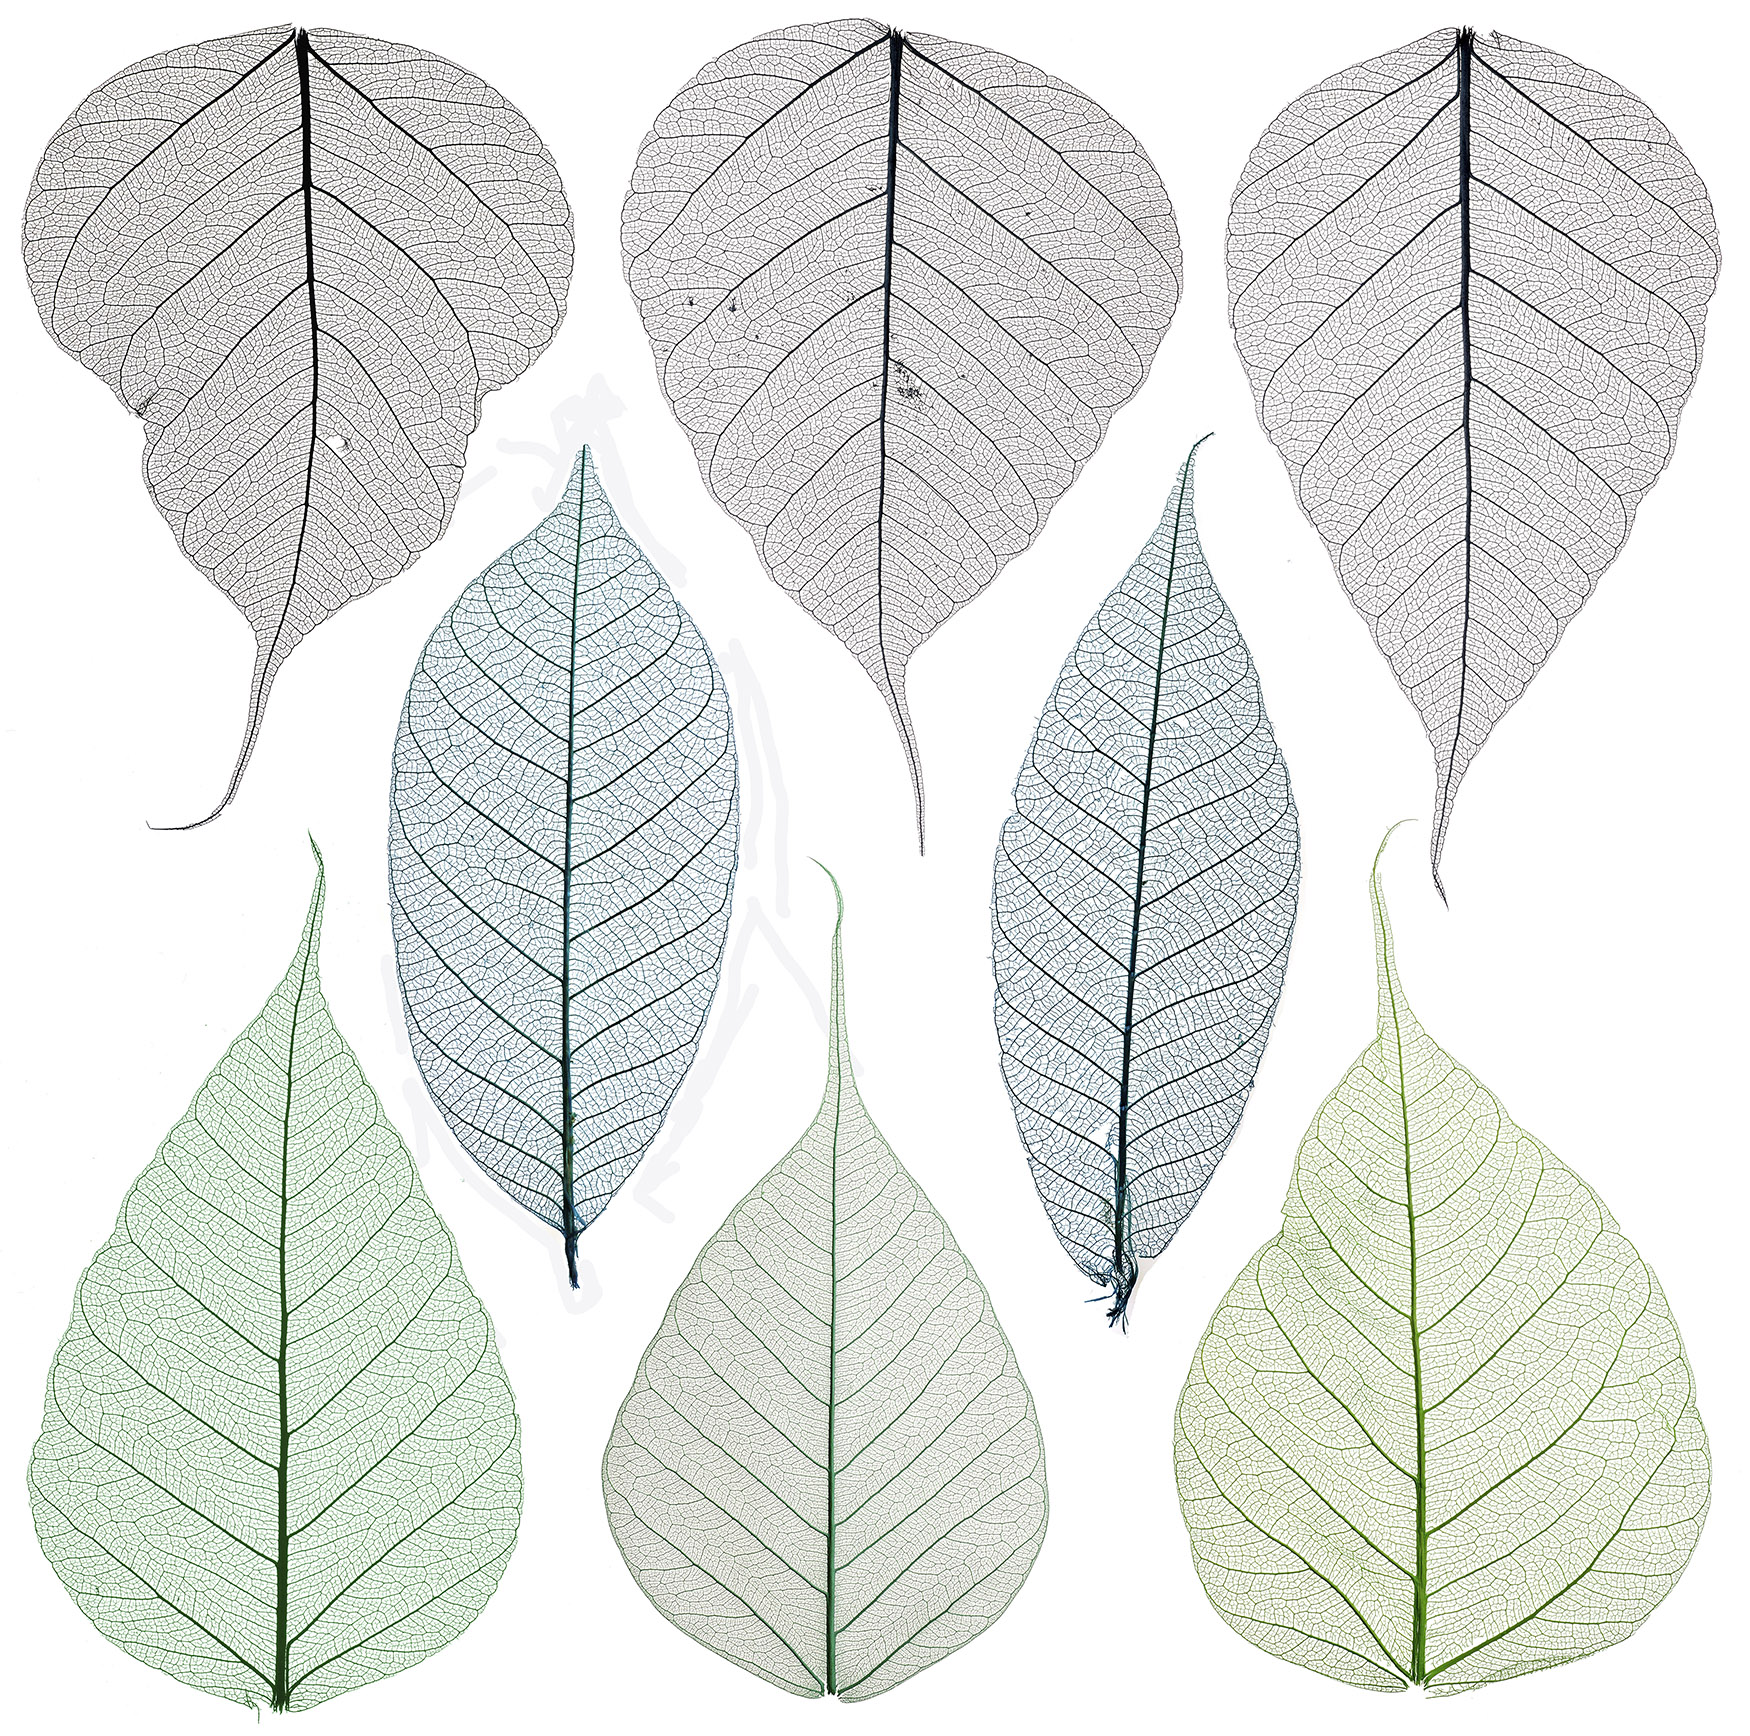 Set of decorative skeleton leaf isolated on white.